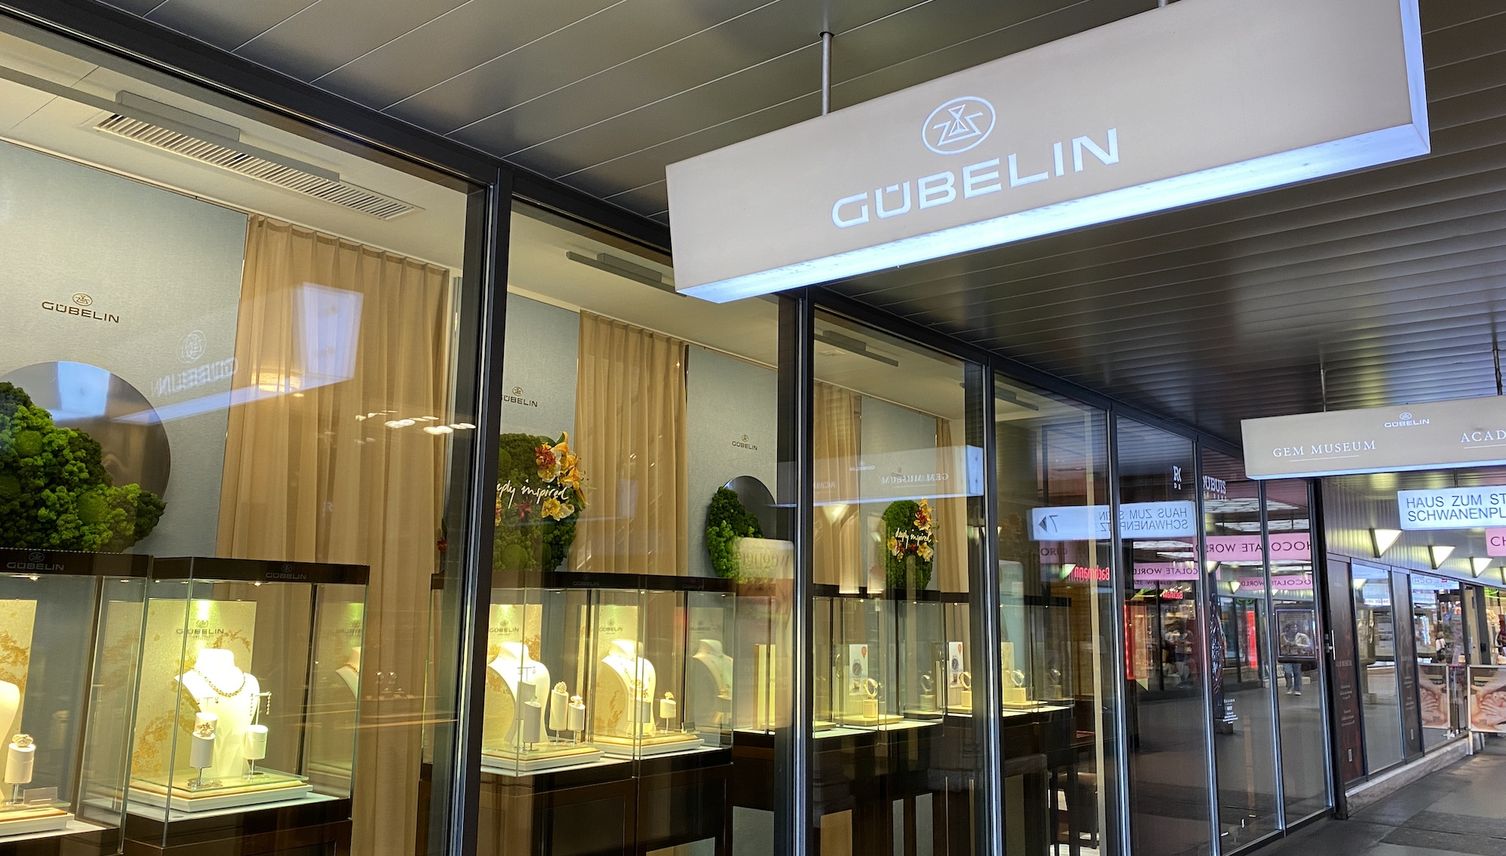 Gübelin-Raub: 14-Jahre Haft für Hauptbeschuldigten